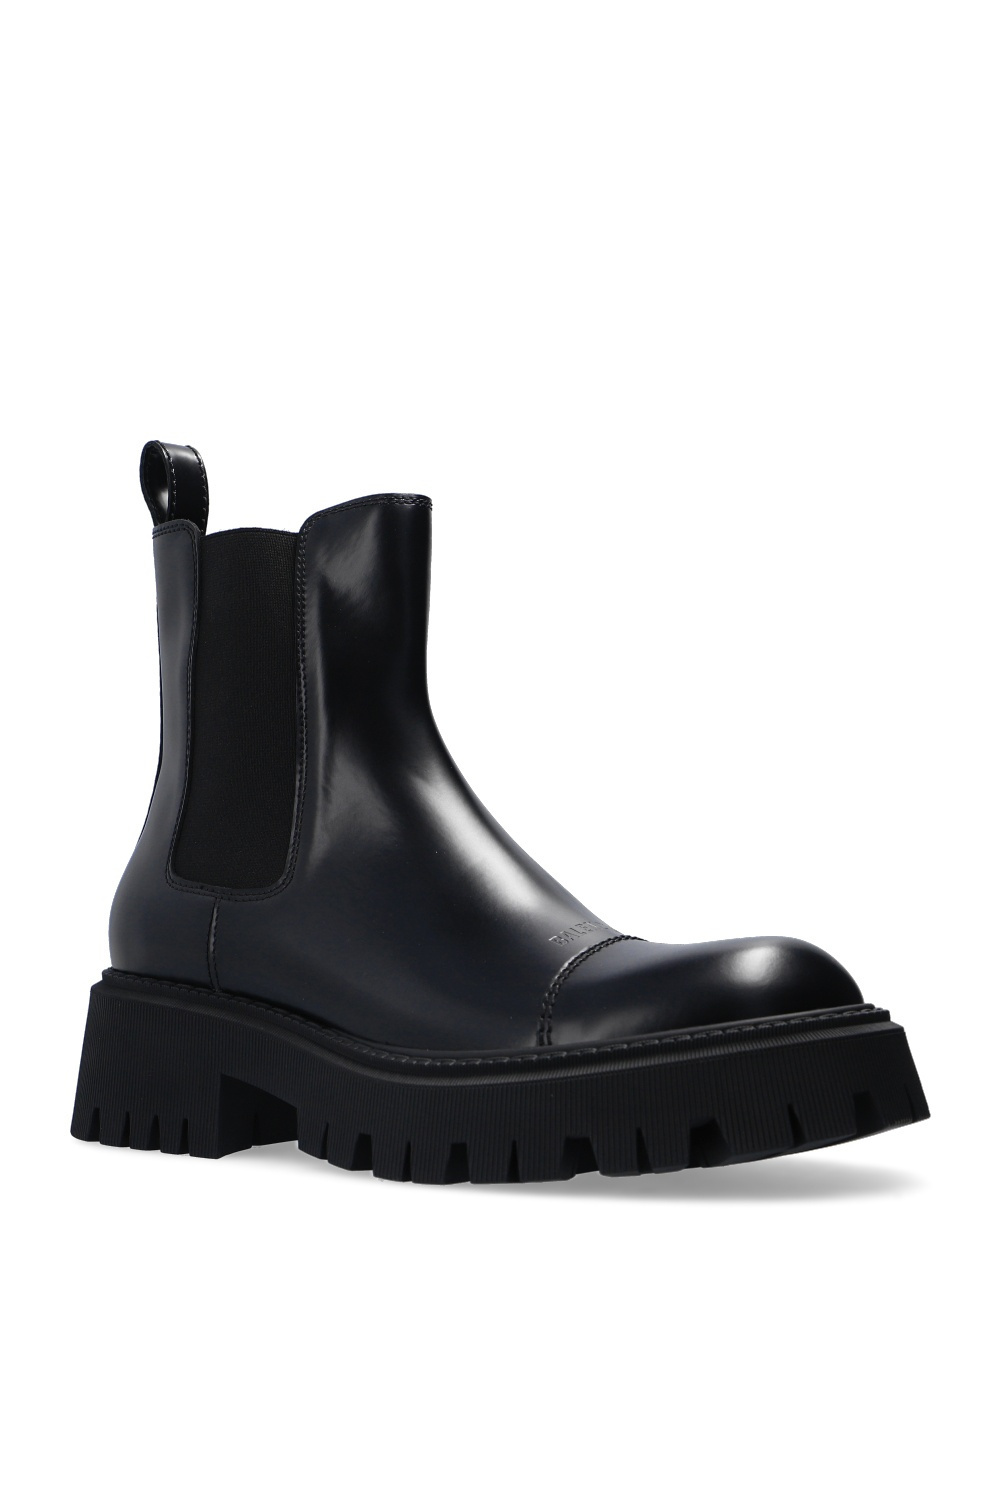 Louis Vuitton Kensington Chelsea Boots - Vitkac shop online